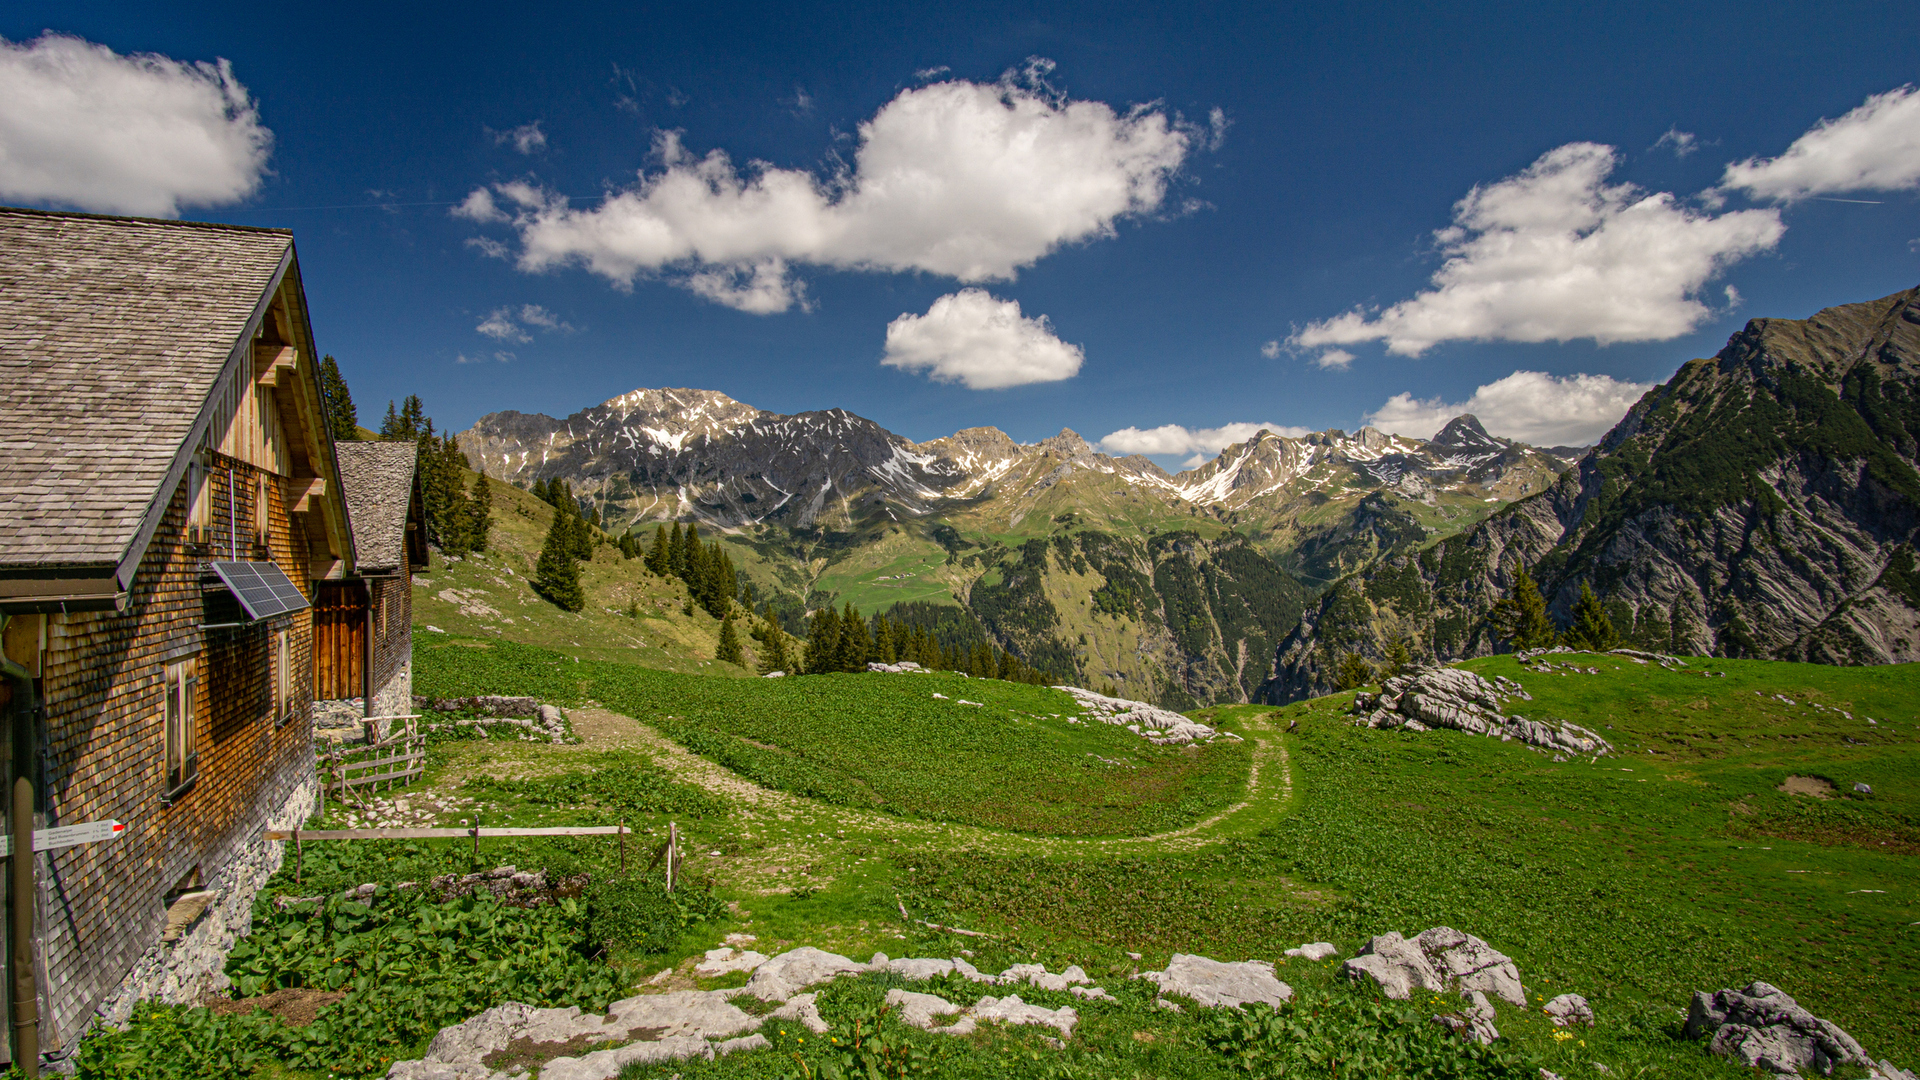 A paisagem bucólica da região de Vorarlberg,no extremo oeste da Áustria